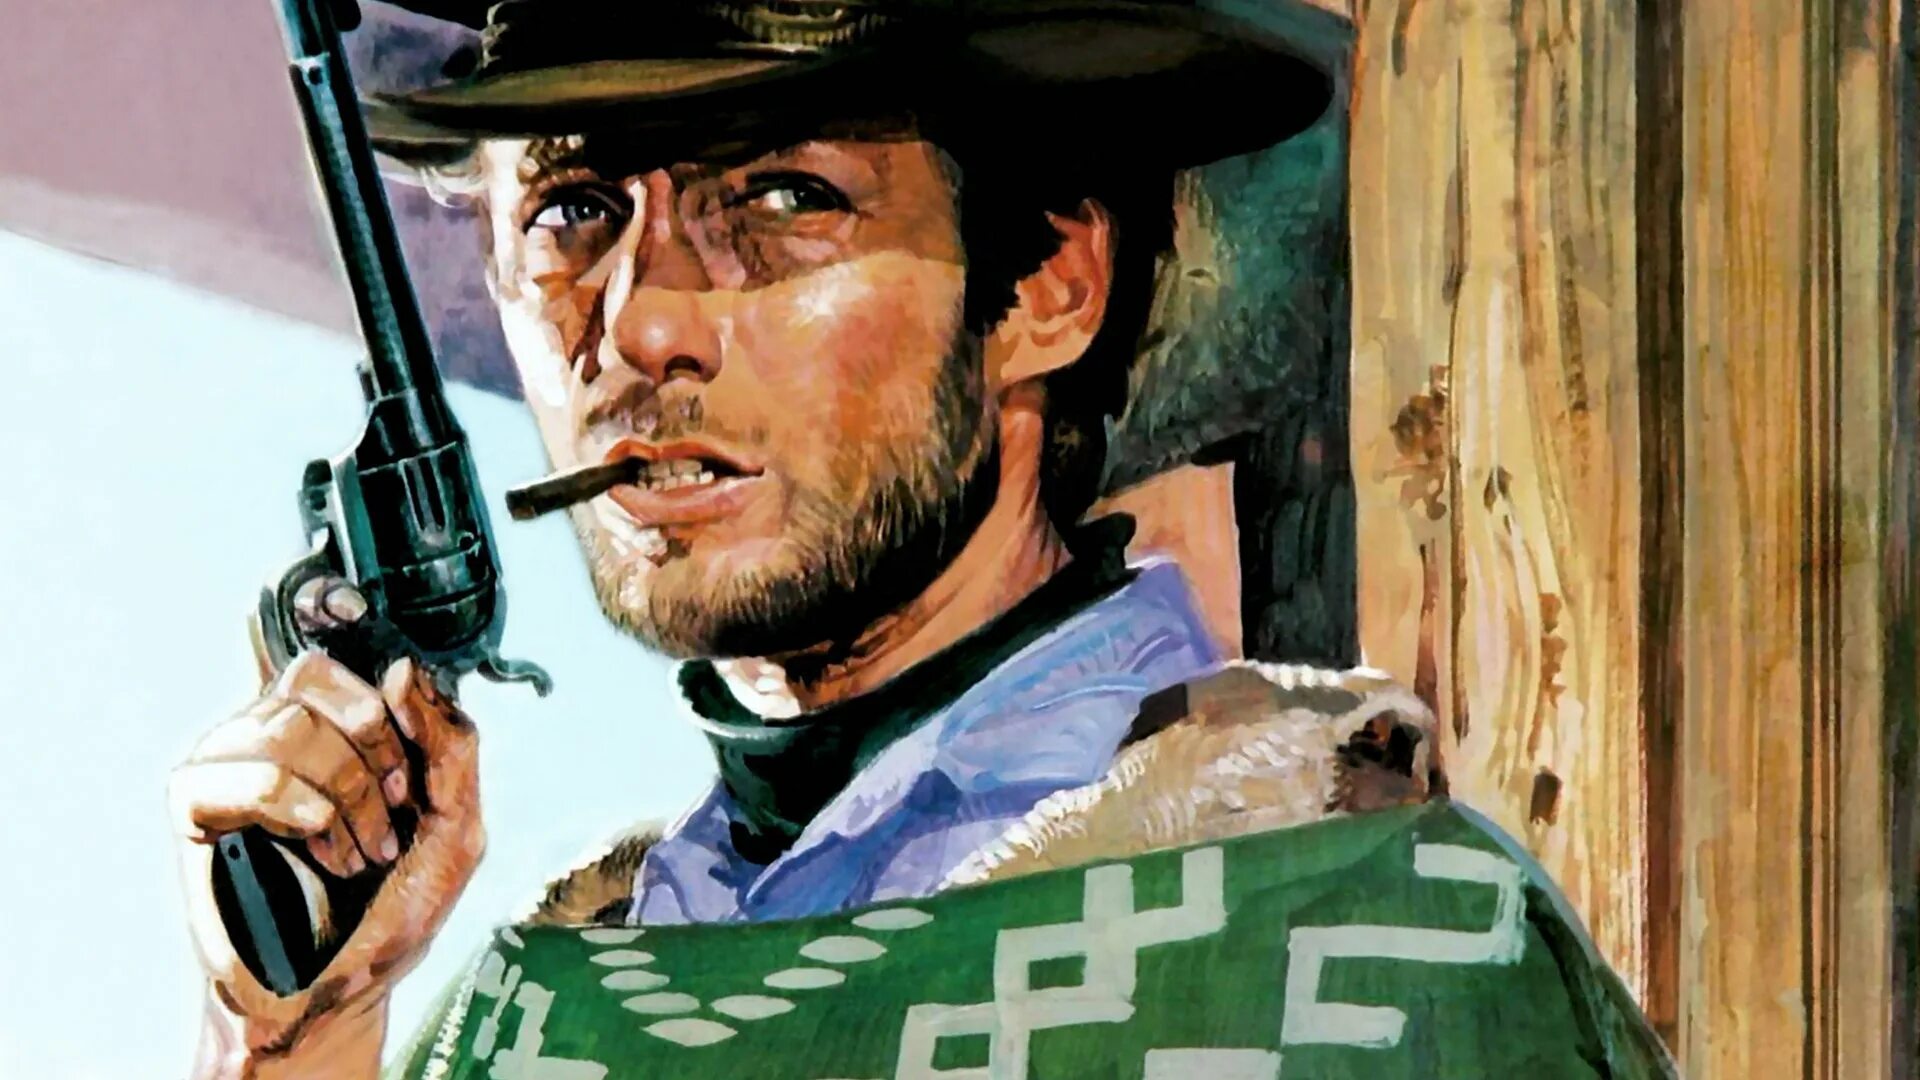 Обои на телефон ковбой. Клинт Иствуд ковбой. Клинт Иствуд долларовая трилогия. Человек без имени Клинт Иствуд арт.